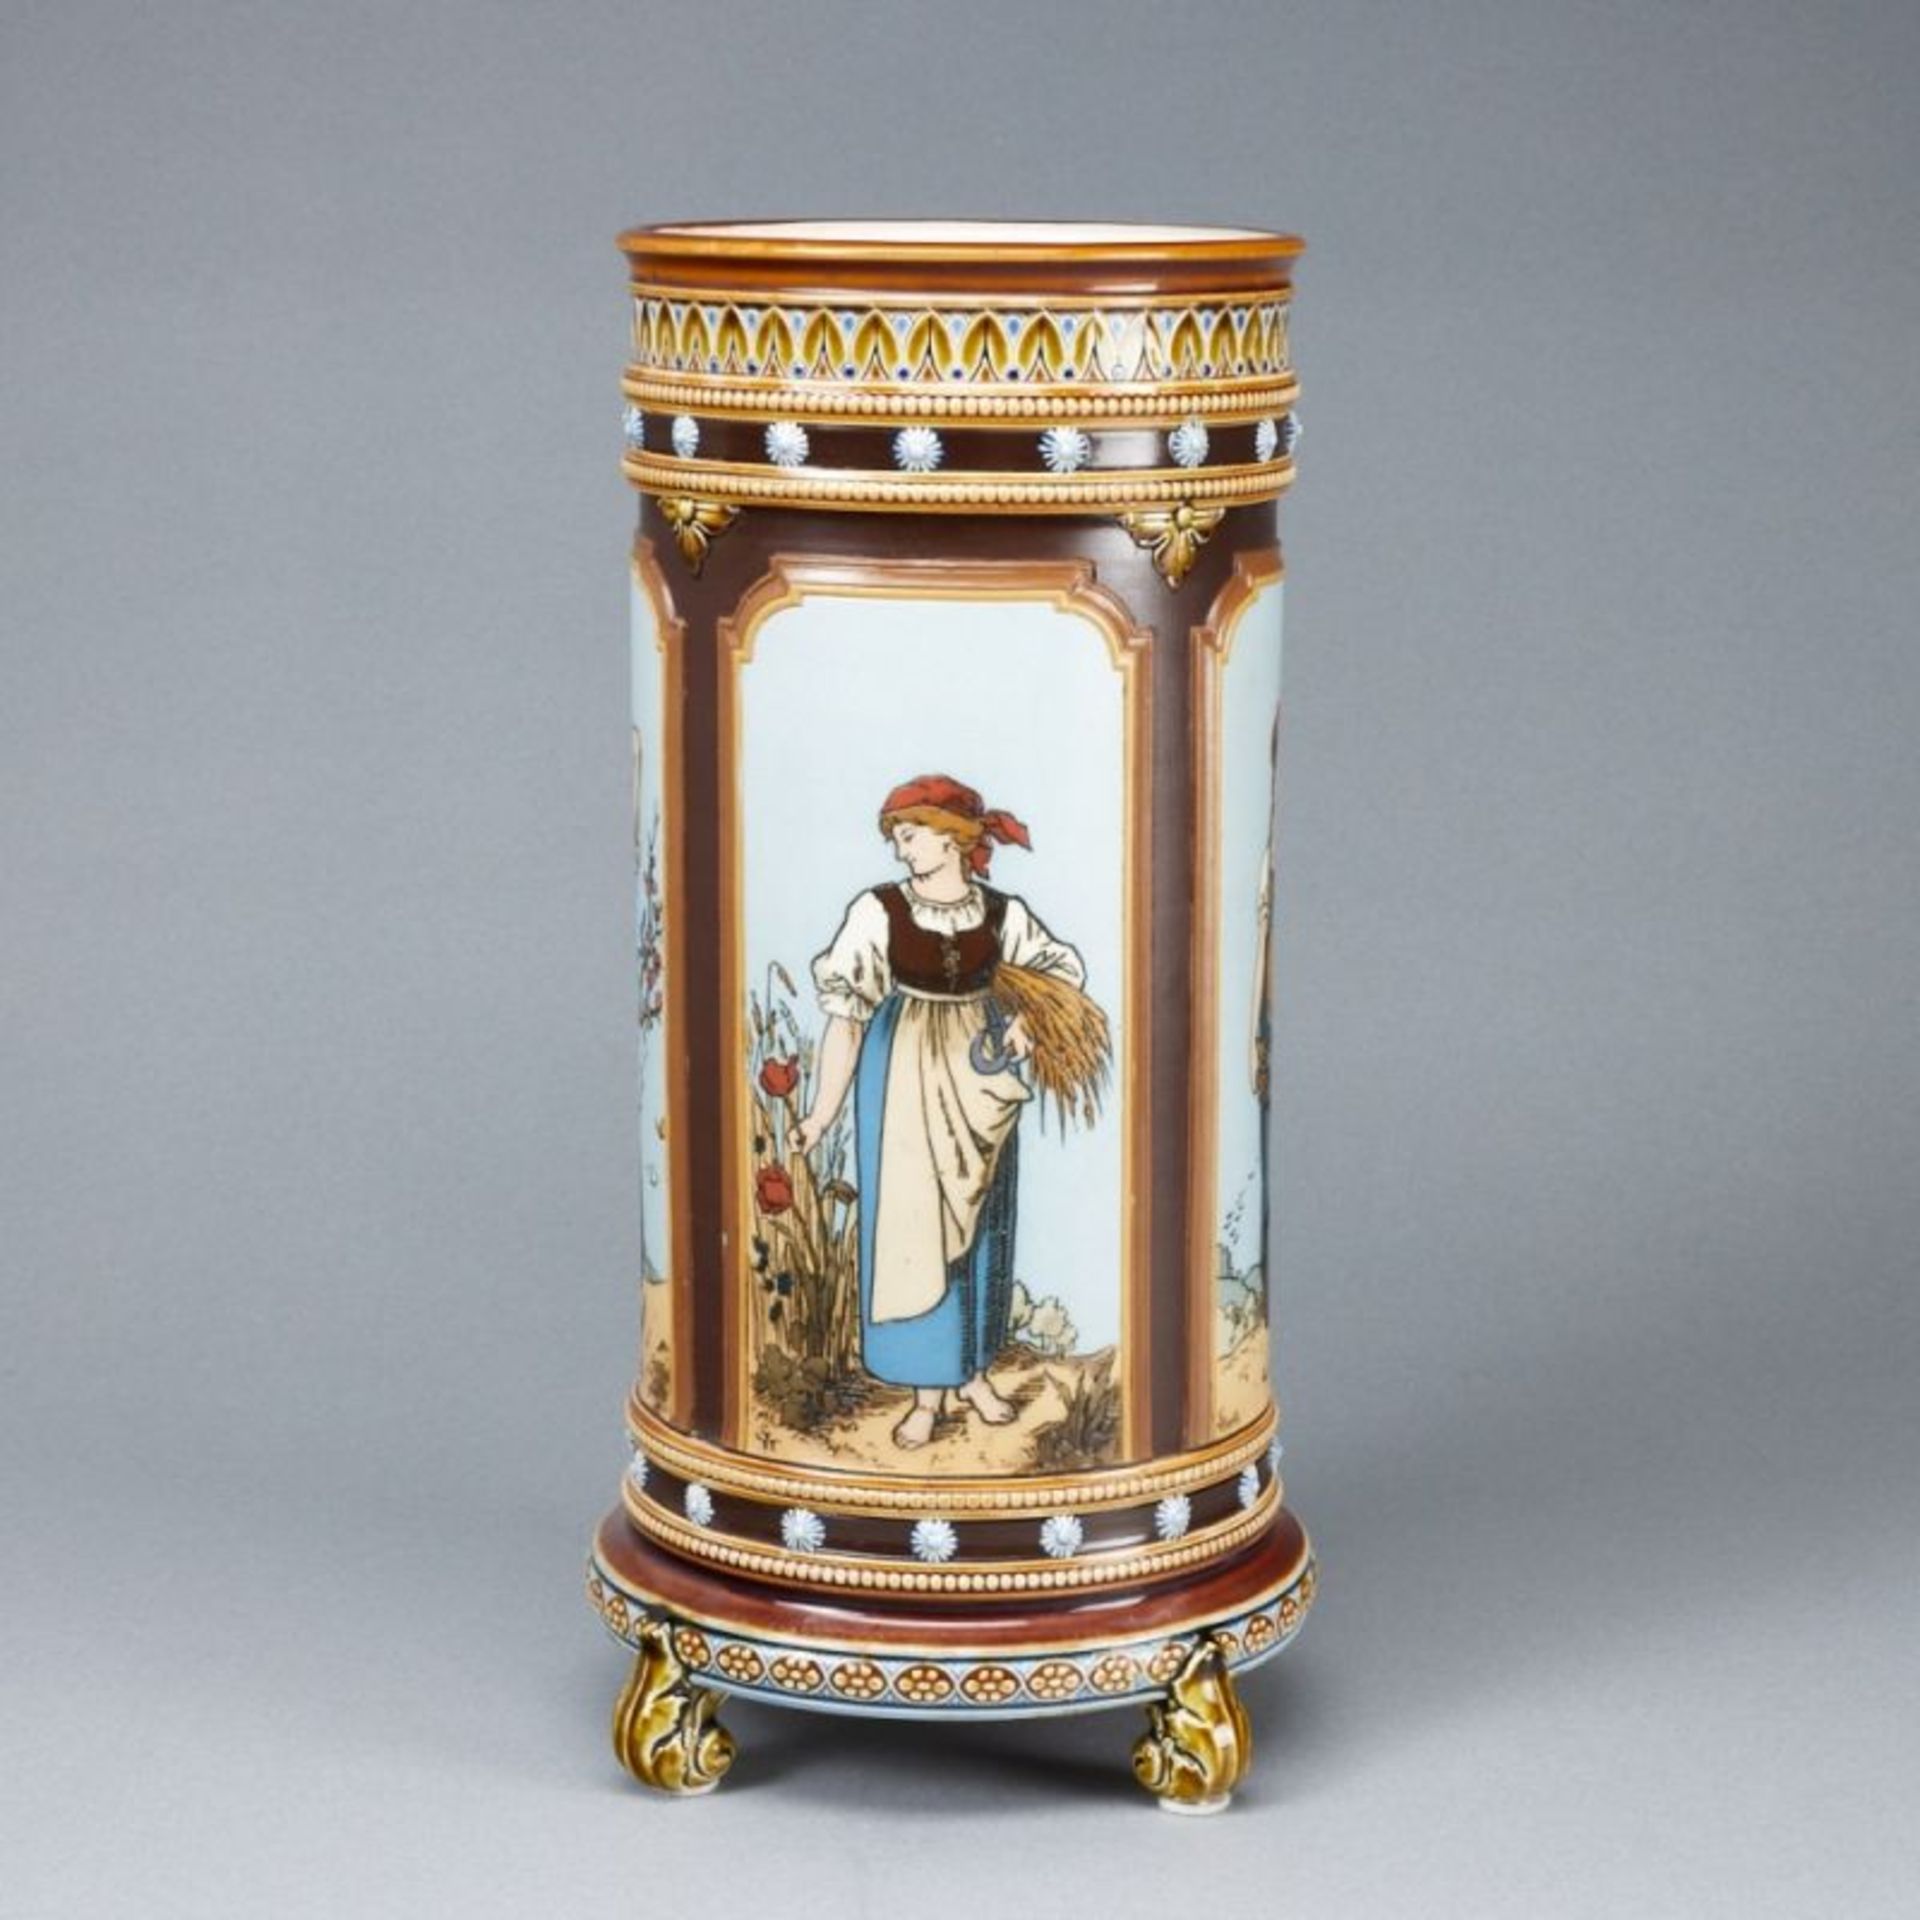 Jugendstil Vase - Vier Jahreszeiten. Villeroy & Boch, Mettlach um 1885. - Bild 2 aus 4